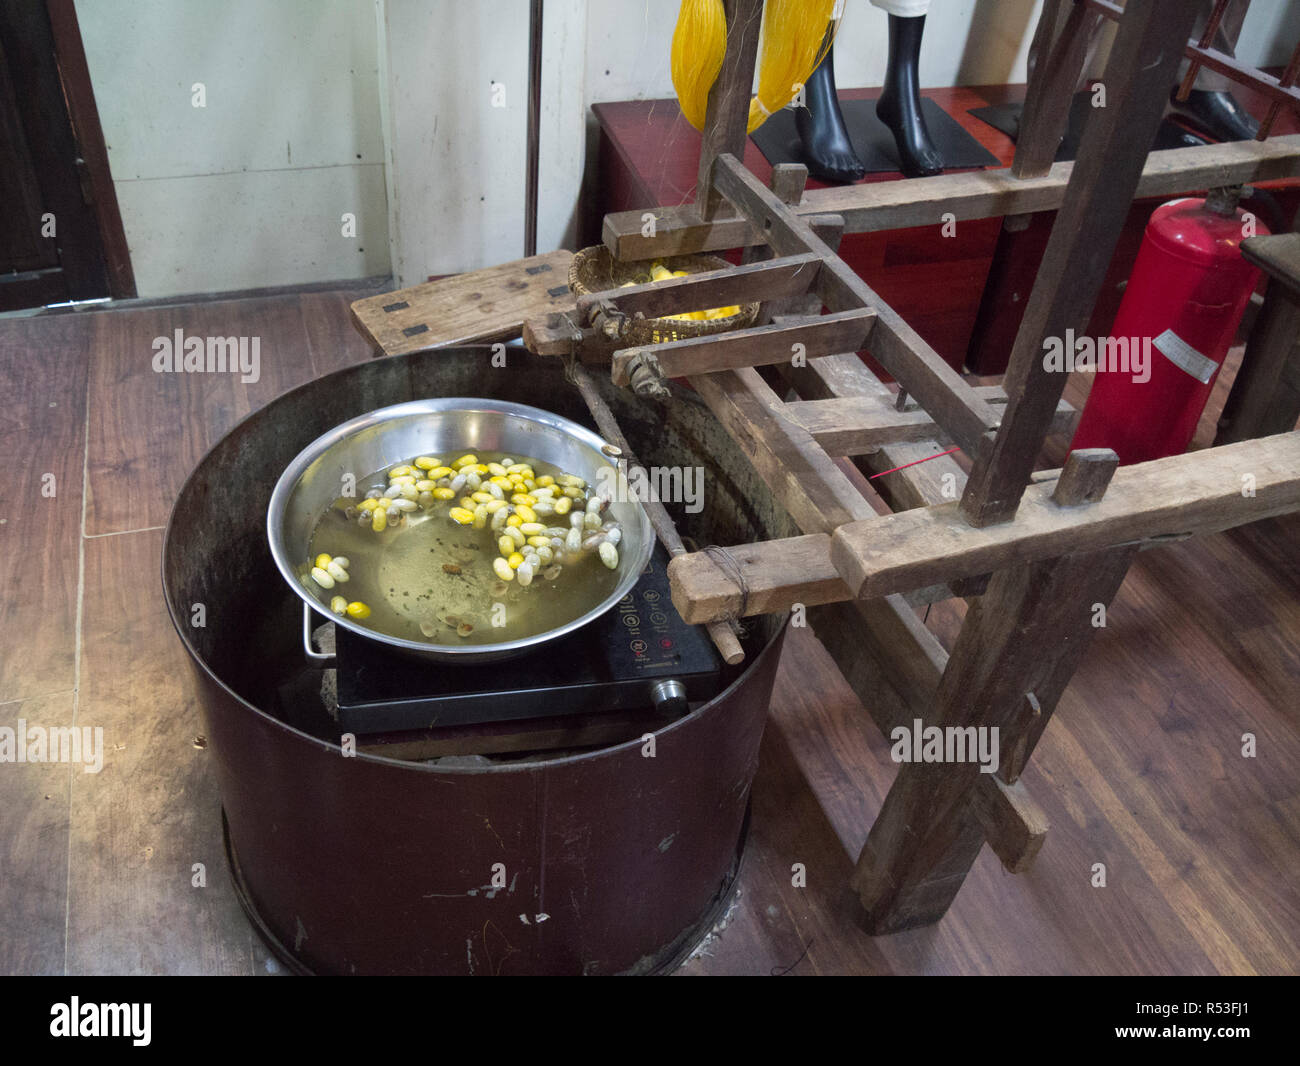 Les larves de vers à soie pour bouillir le pot pour extraire des fils de soie de soie en Asie Vietnam Hoi An en usine Banque D'Images